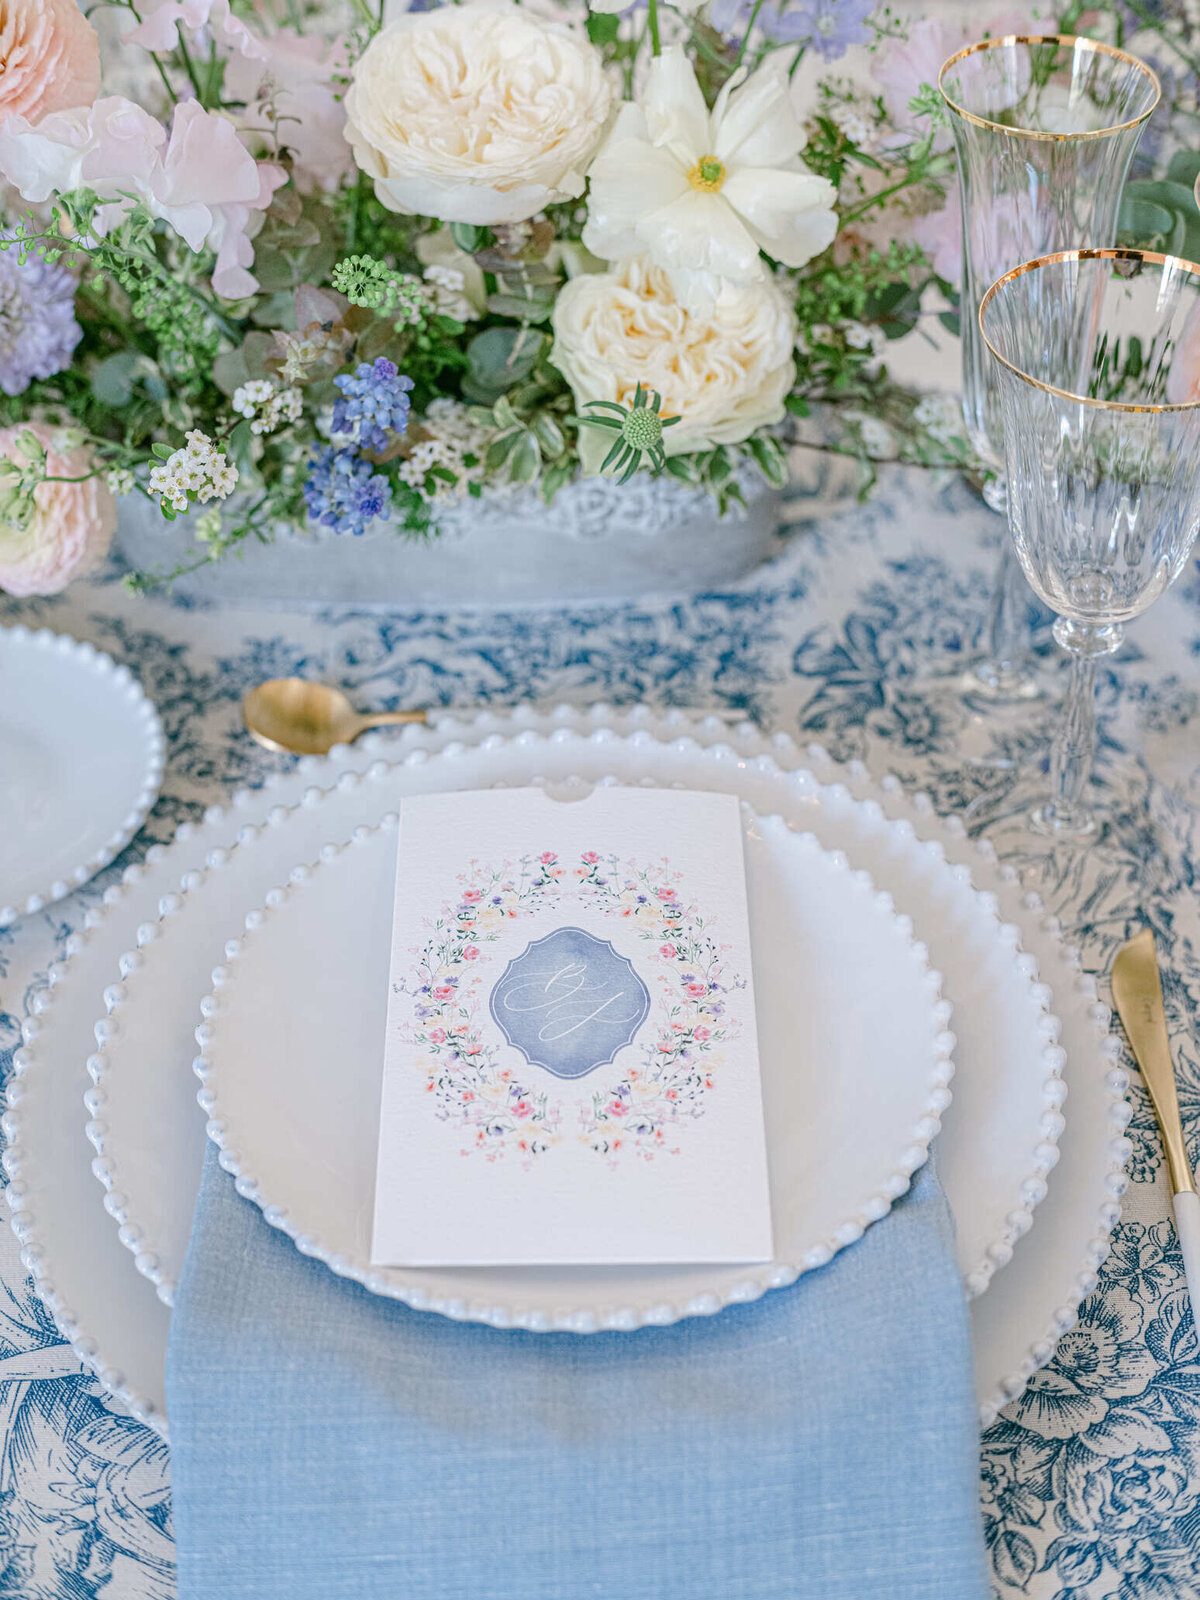 Chateau-de-Ferriere-Wedding-table-design-9